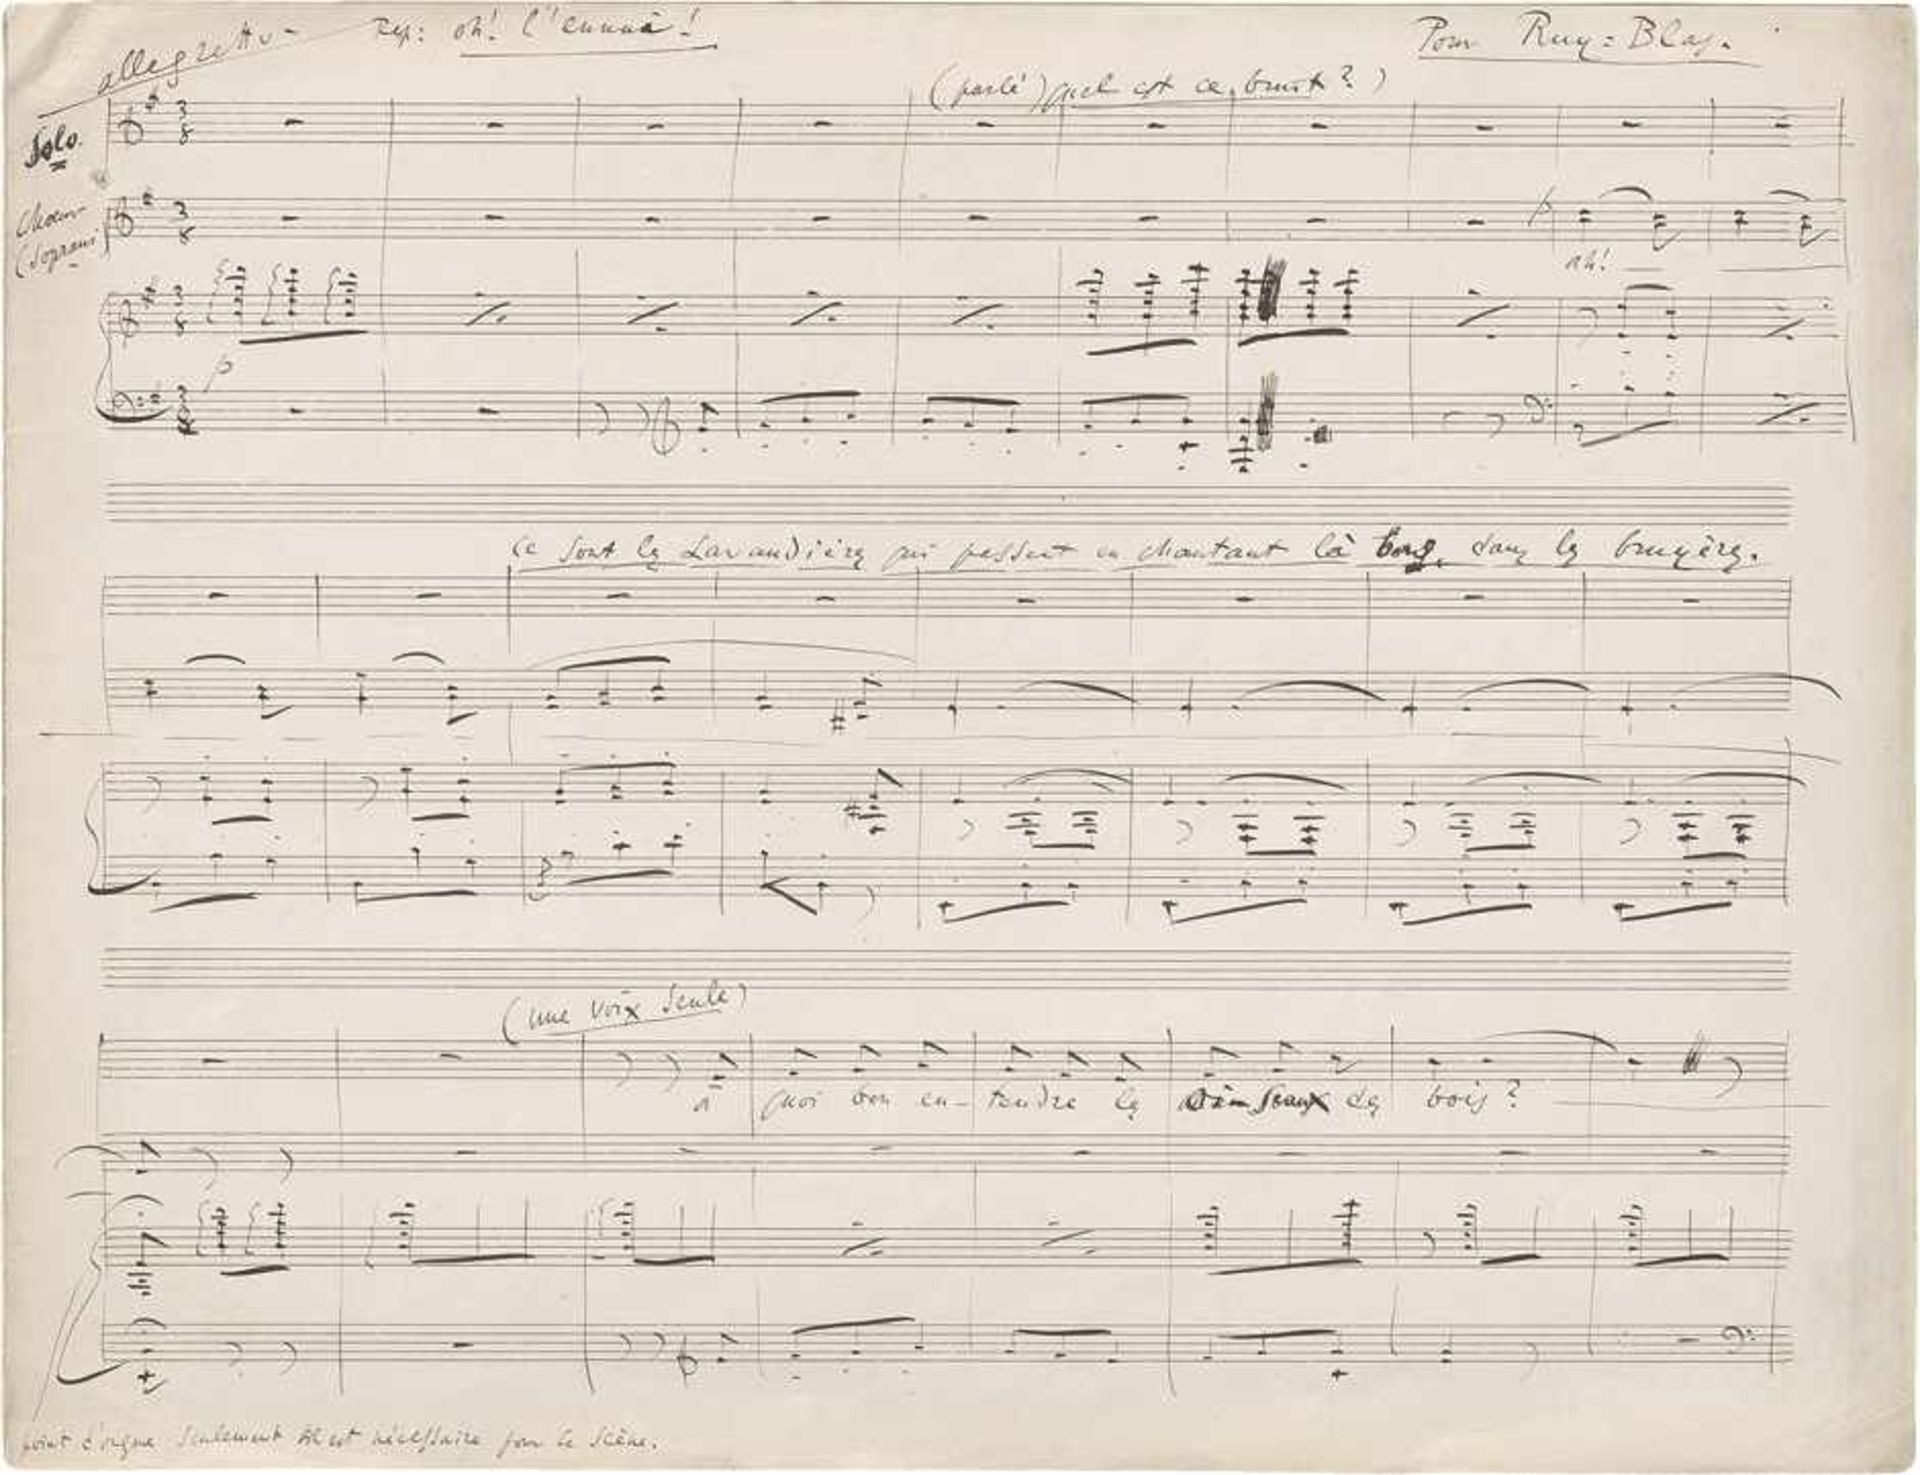 Délibes, Léo: Eigenhänd. MusikmanuskriptDélibes, Léo, franz. Opern- und Ballettkomponist (1839-